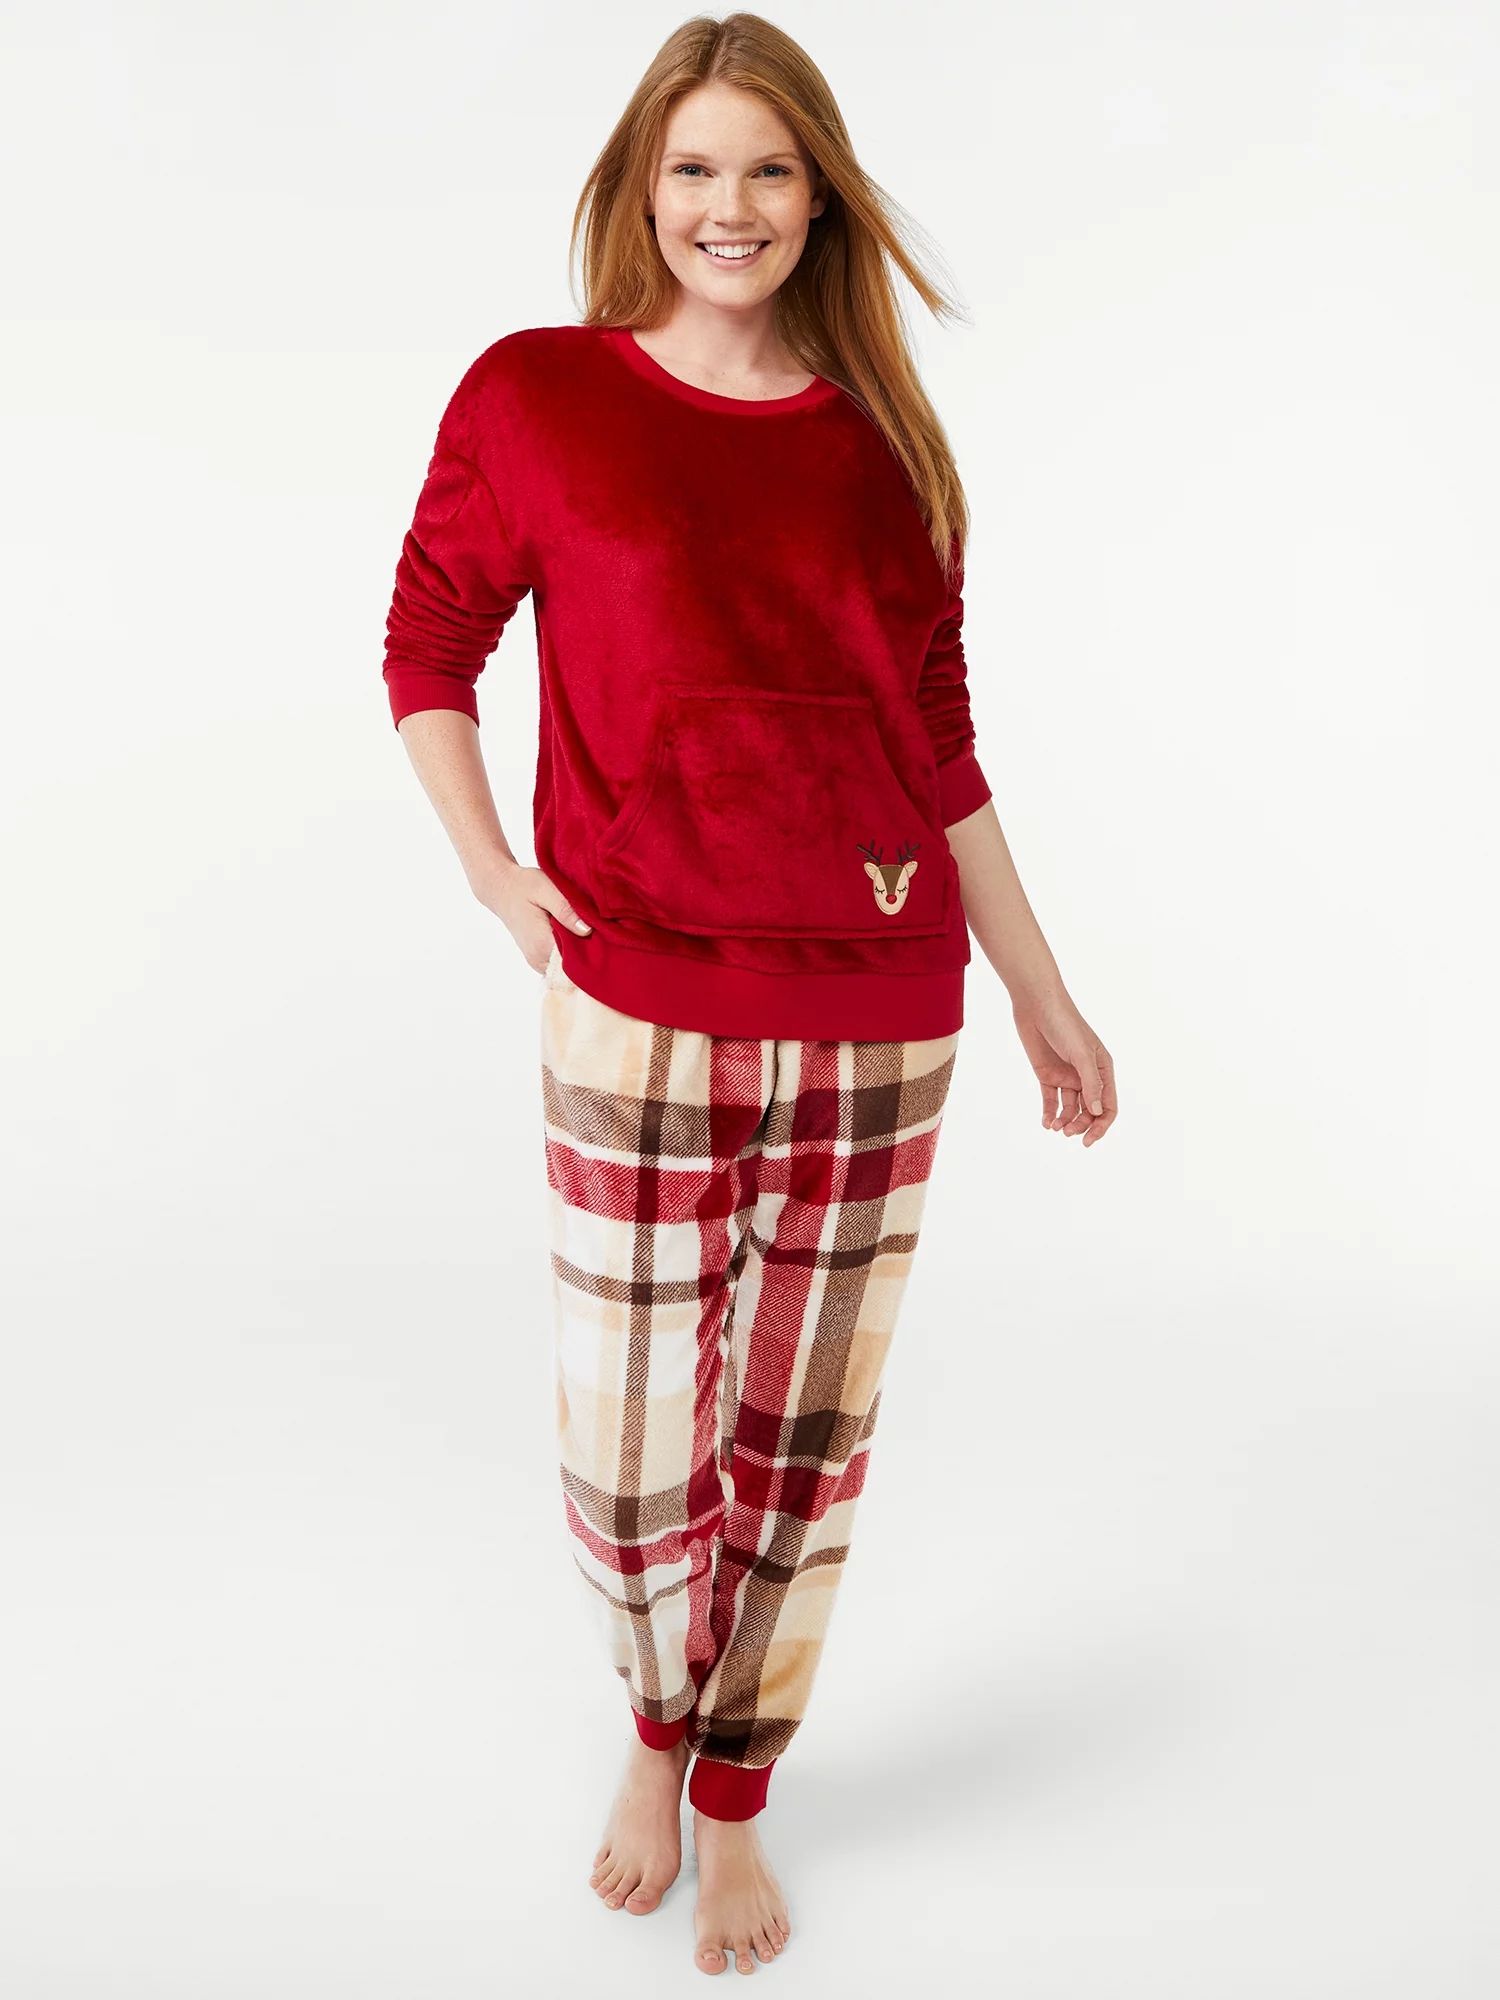 Joyspun Women's Plush Deer Long Sleeve Top and Pants Pajama Set, 2-Piece, Sizes up to 3X | Walmart (US)